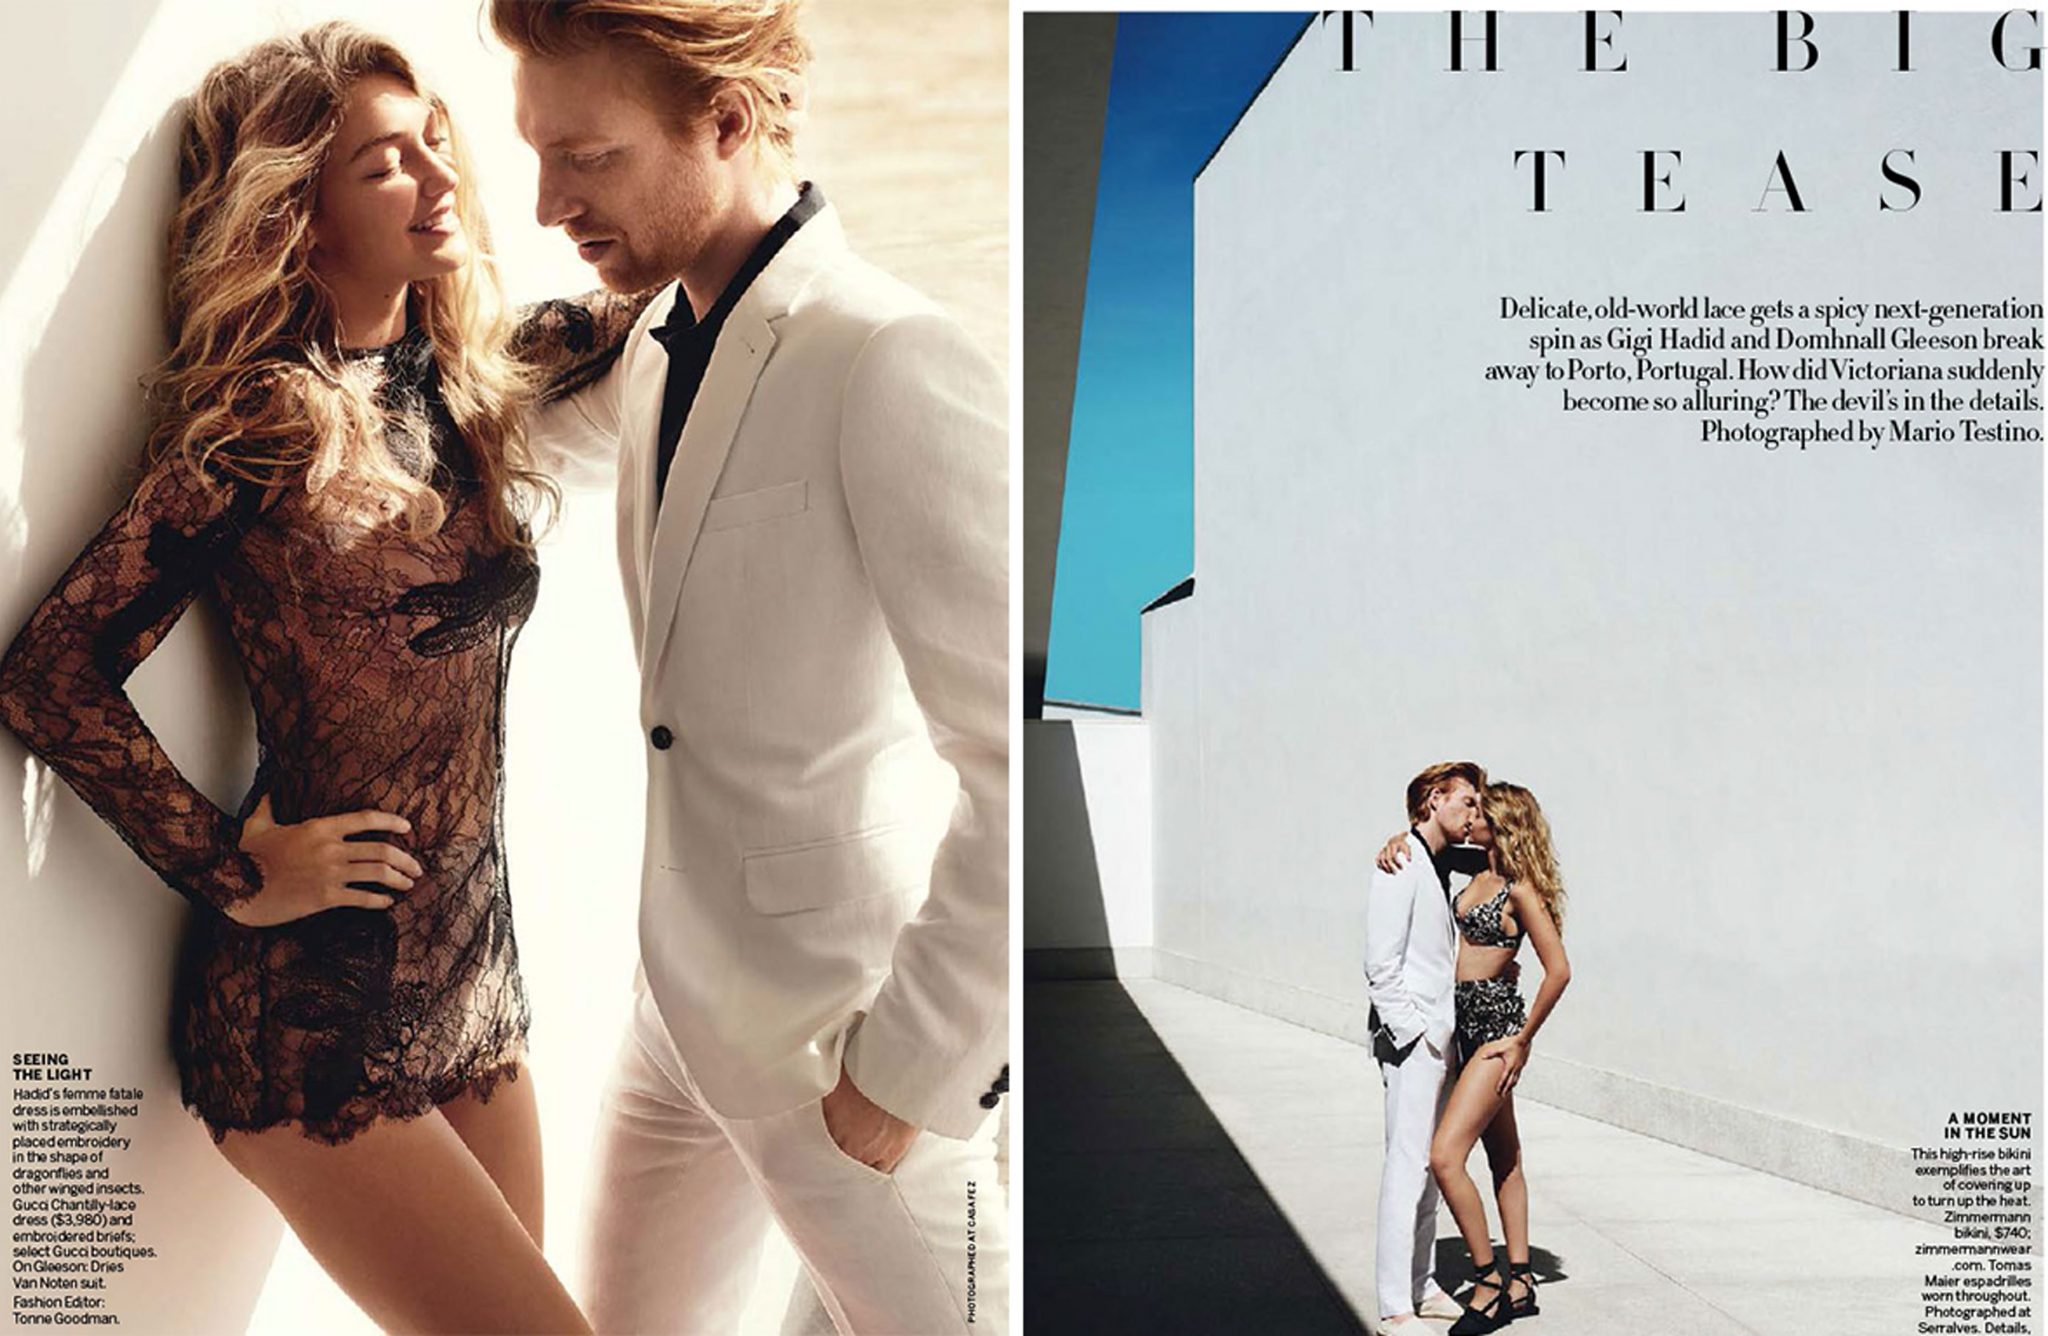 Michael Philouze | Vogue US: The Big Tease | 1